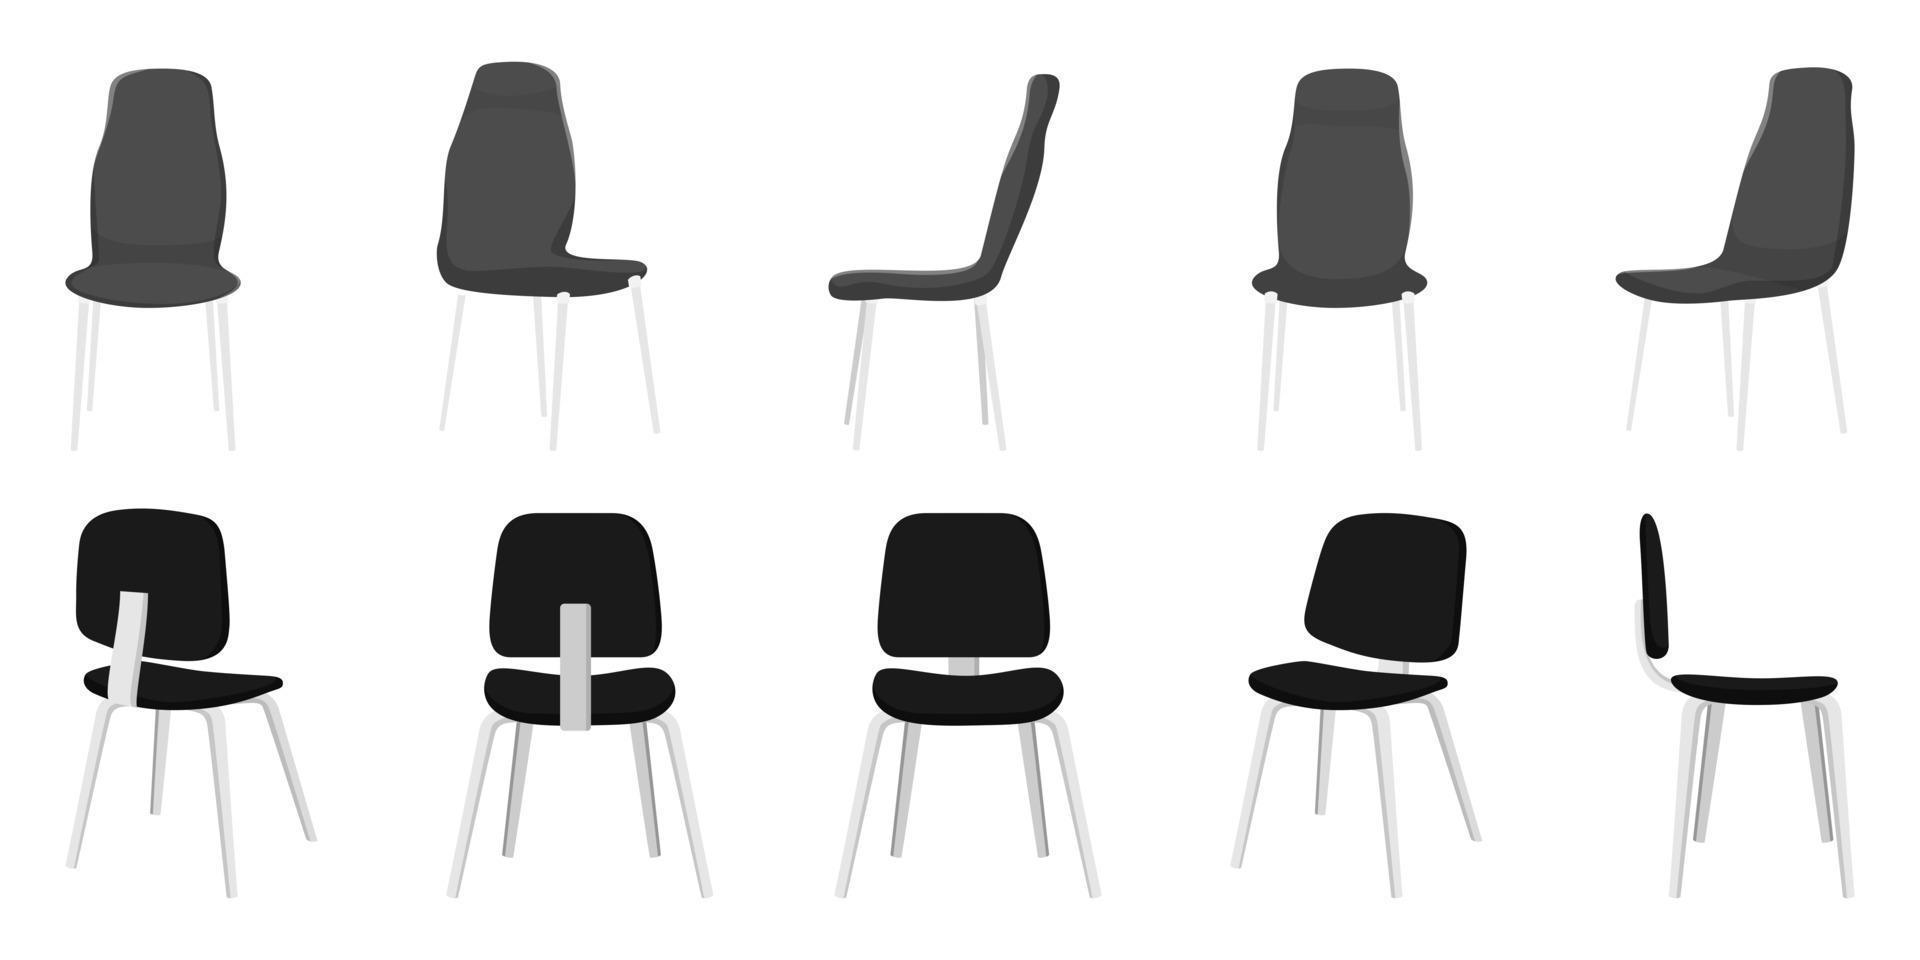 escritório bonito moderno bonito e cadeiras de diferentes formas e tamanhos ao ar livre com diferentes poses e posições e cor preta vetor